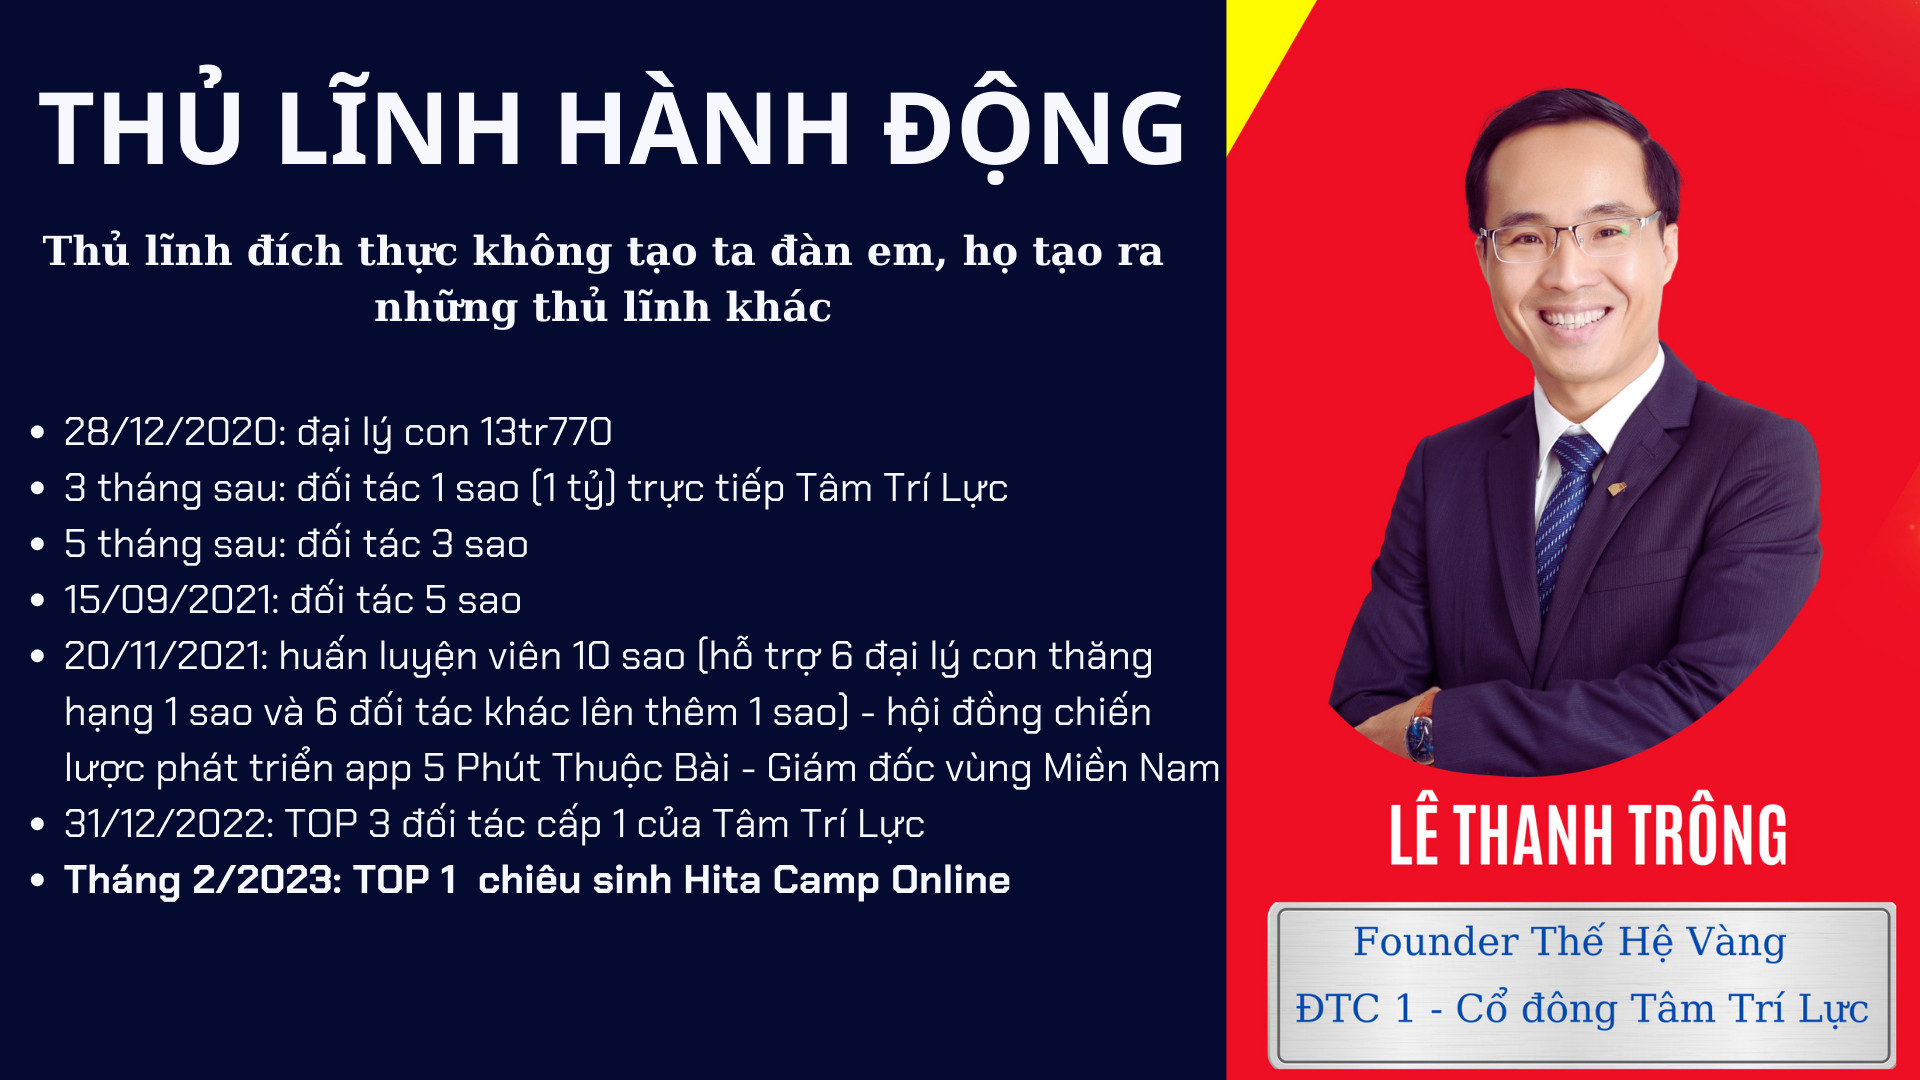 Đại lý Hita Camp Online - Lê Thanh Trông